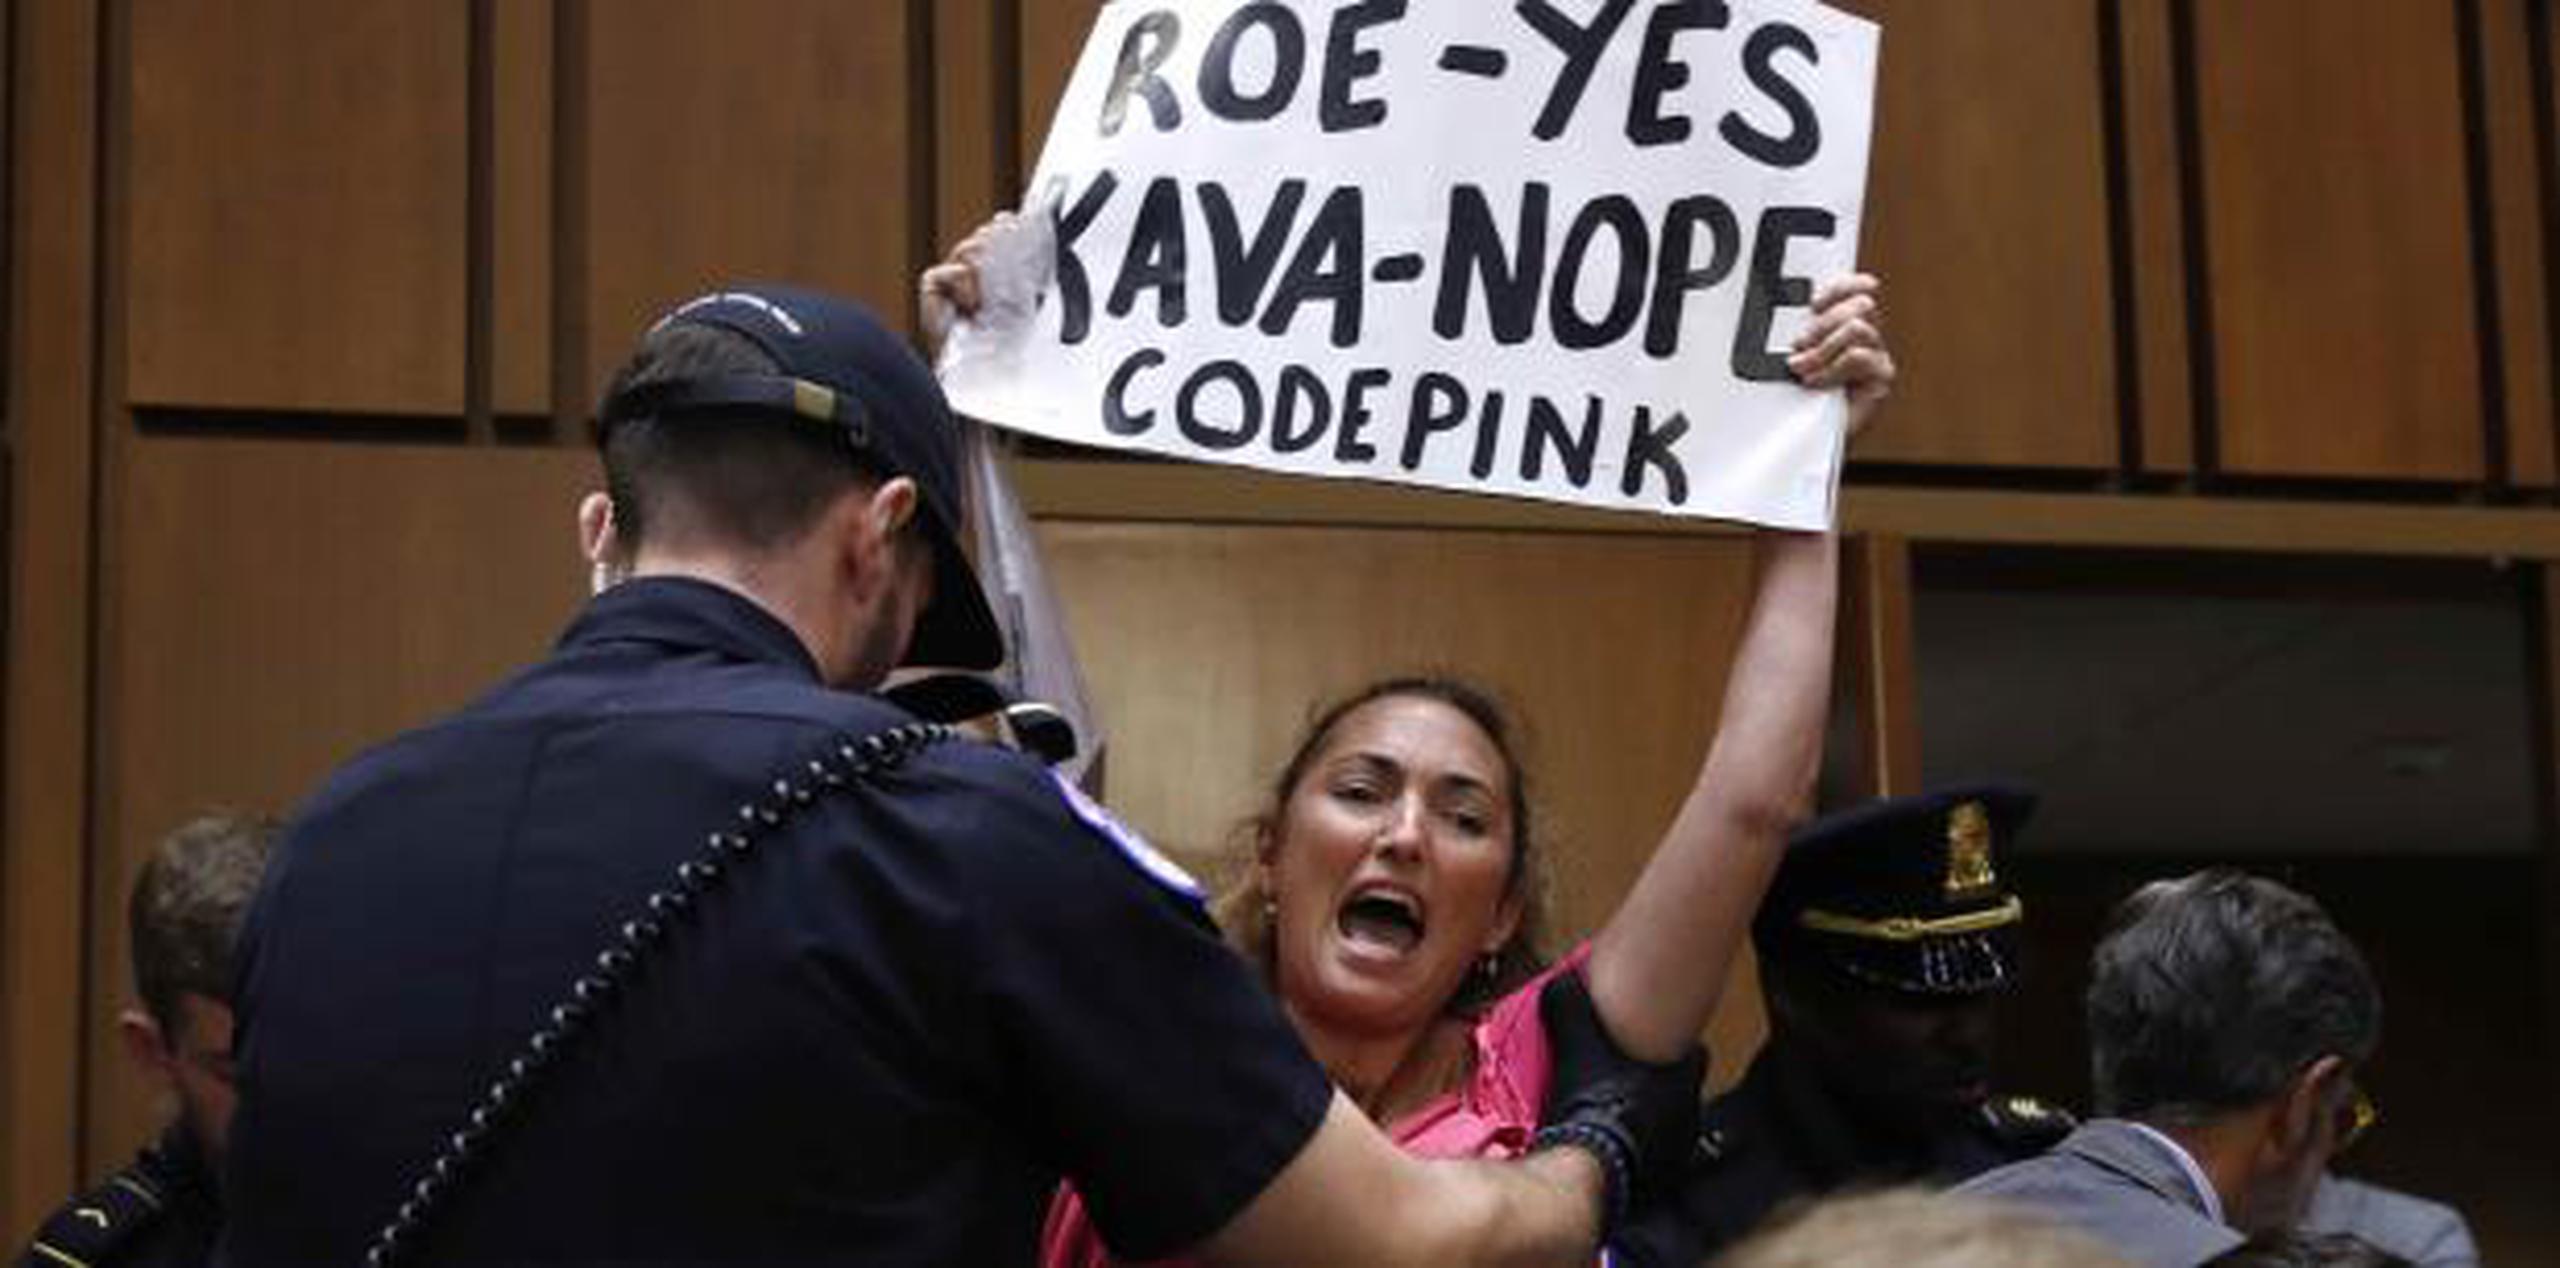 Una manifestante con una pancarta alusiva al caso que legaliza el aborto "Roe vs Wade" es sacada del salón de audiencias por personal de seguridad del Congreso. (AP)